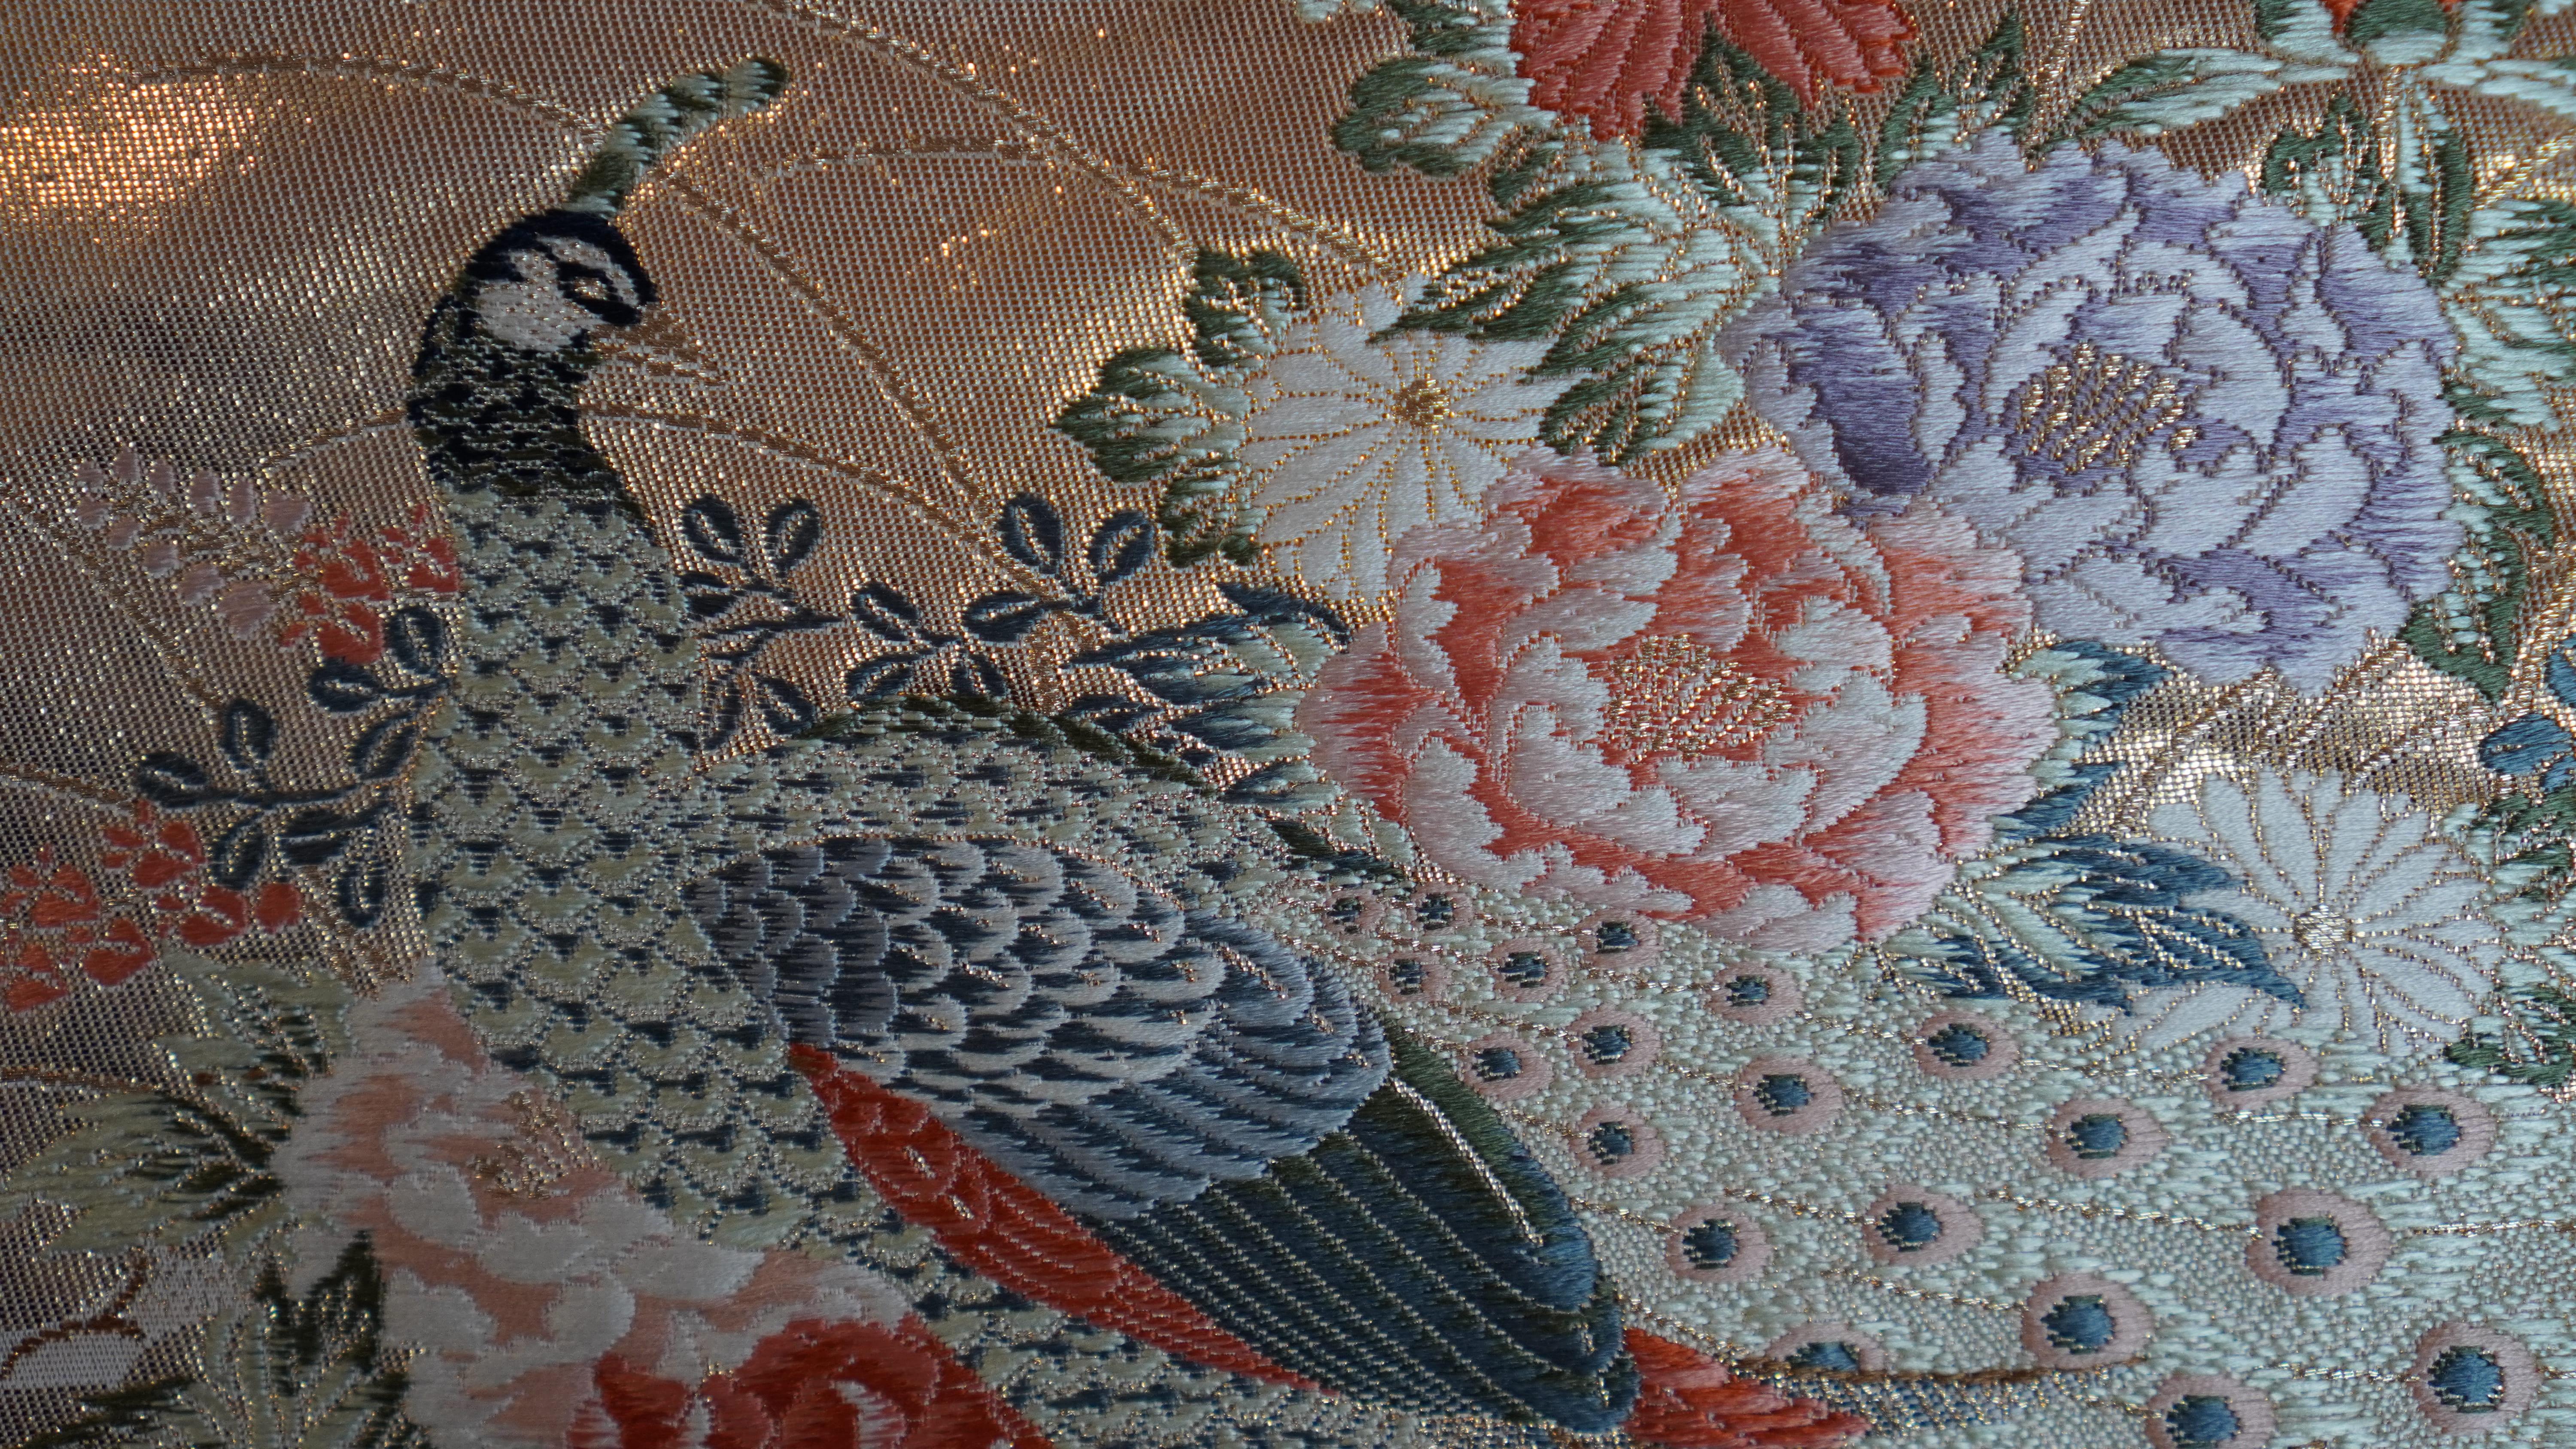 Contemporary Japanese Kimono Art / Kimono Wall Art, The Queen of Peacocks